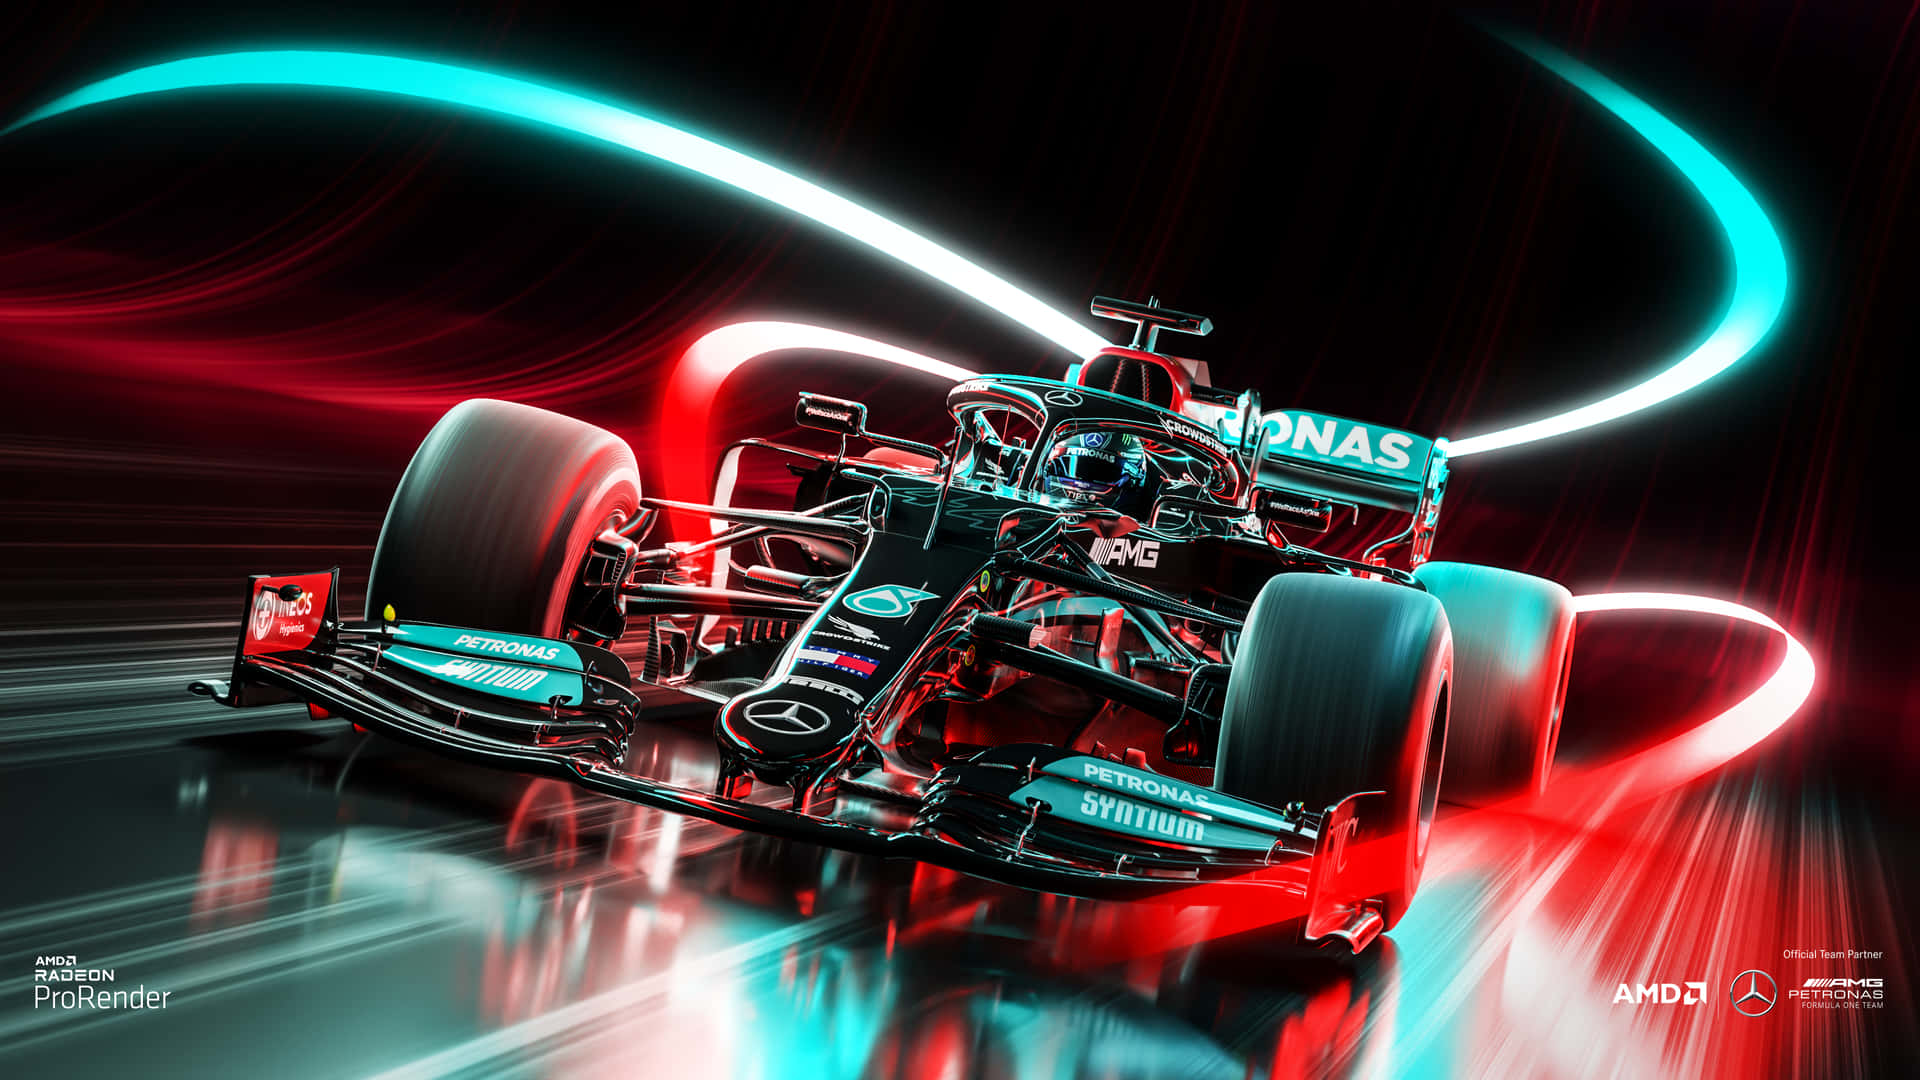 Unauto De Fórmula 1 De Mercedes Está Conduciendo A Través De La Noche. Fondo de pantalla